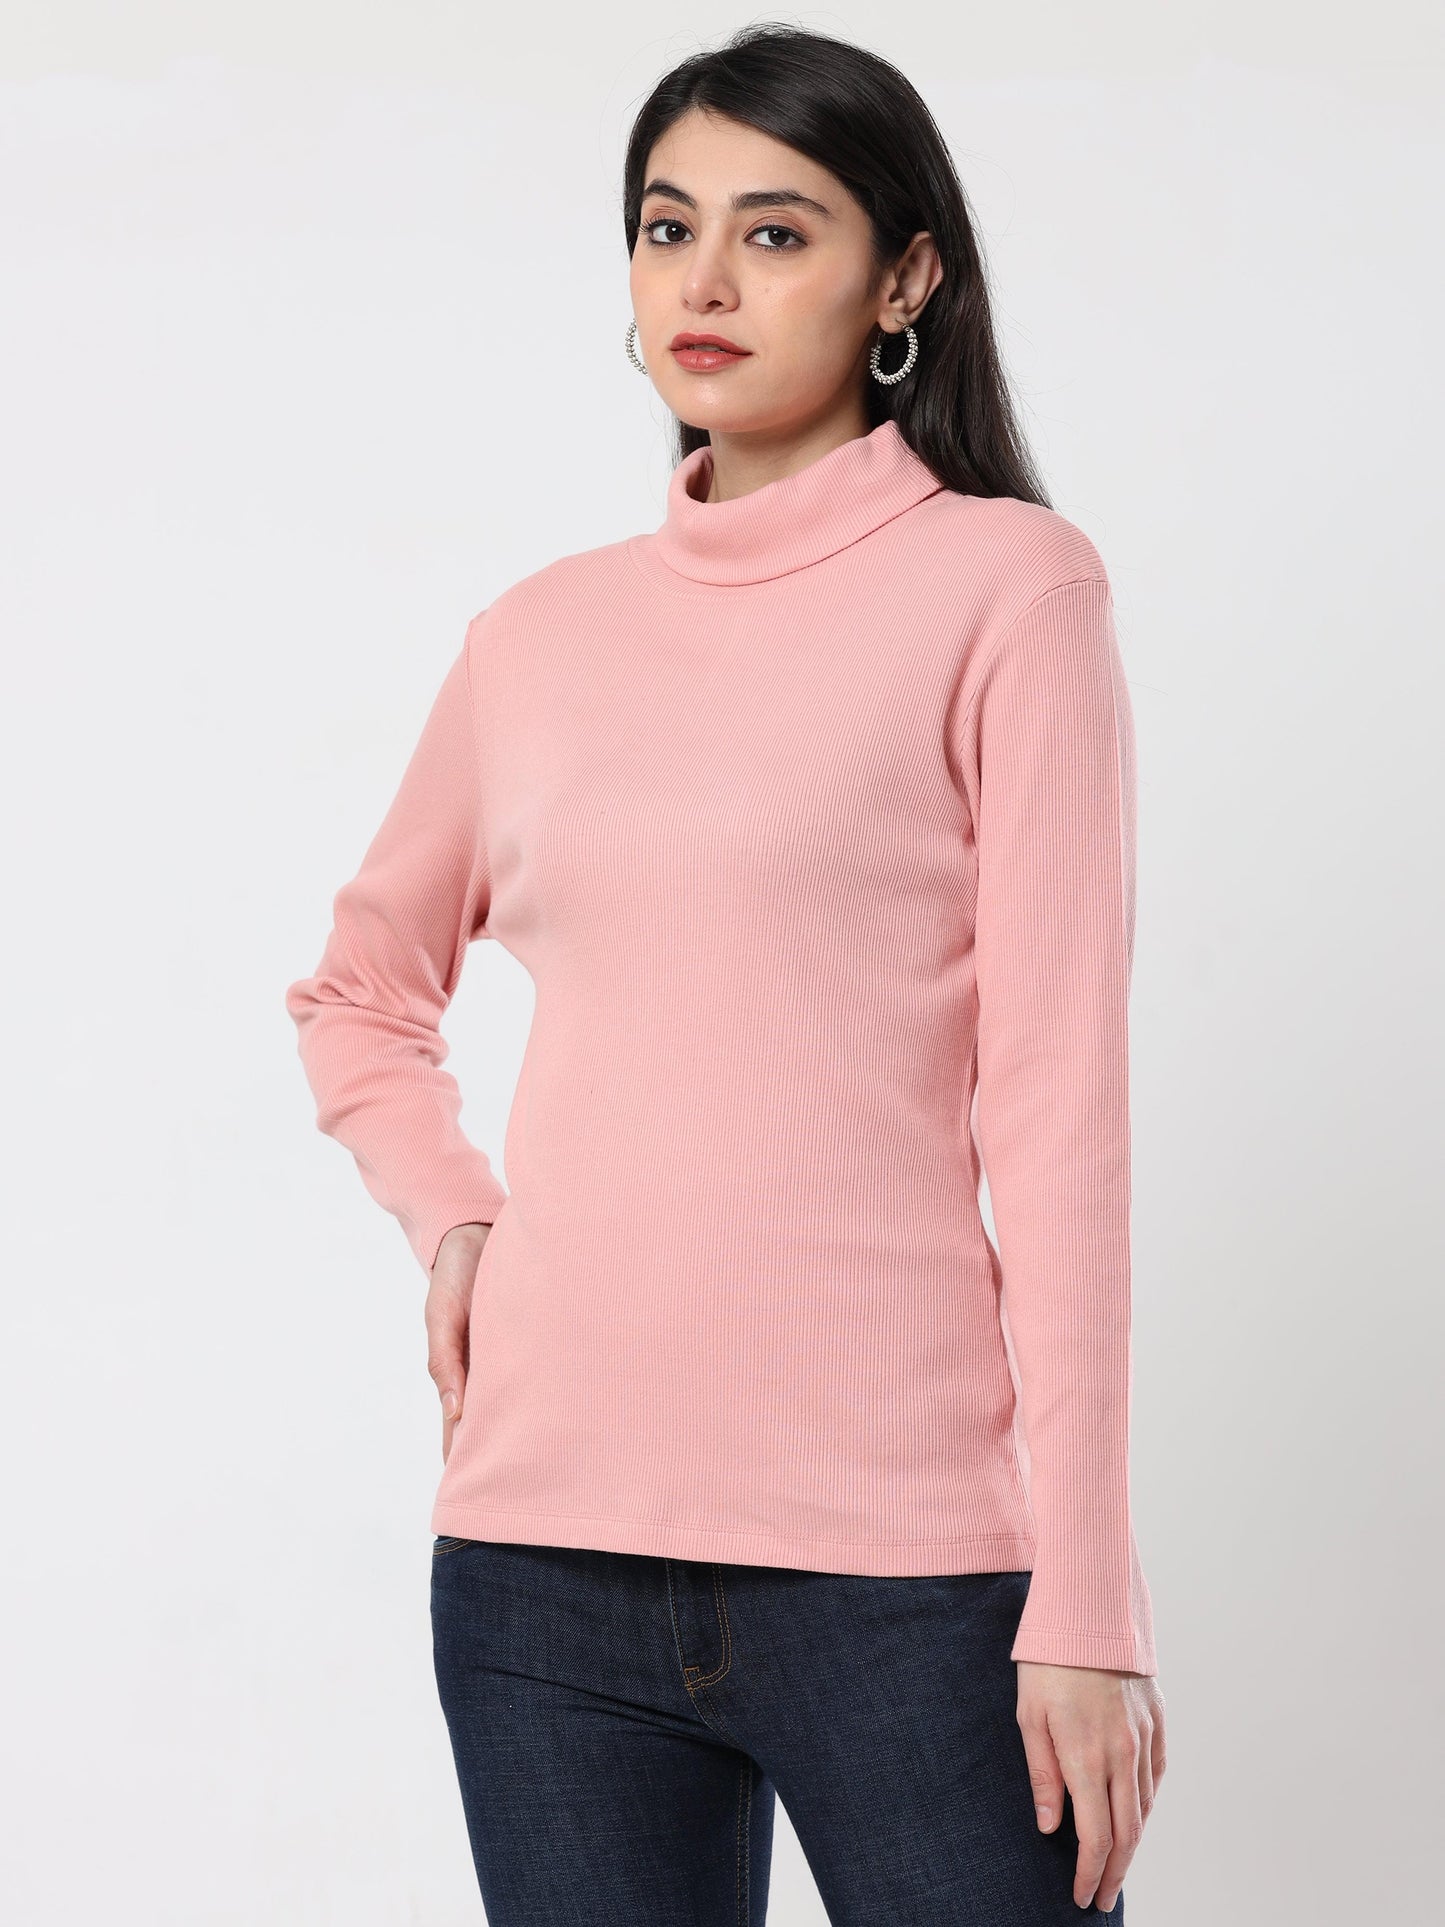 High Neck Full Sleeve Women's T-Shirt - pink